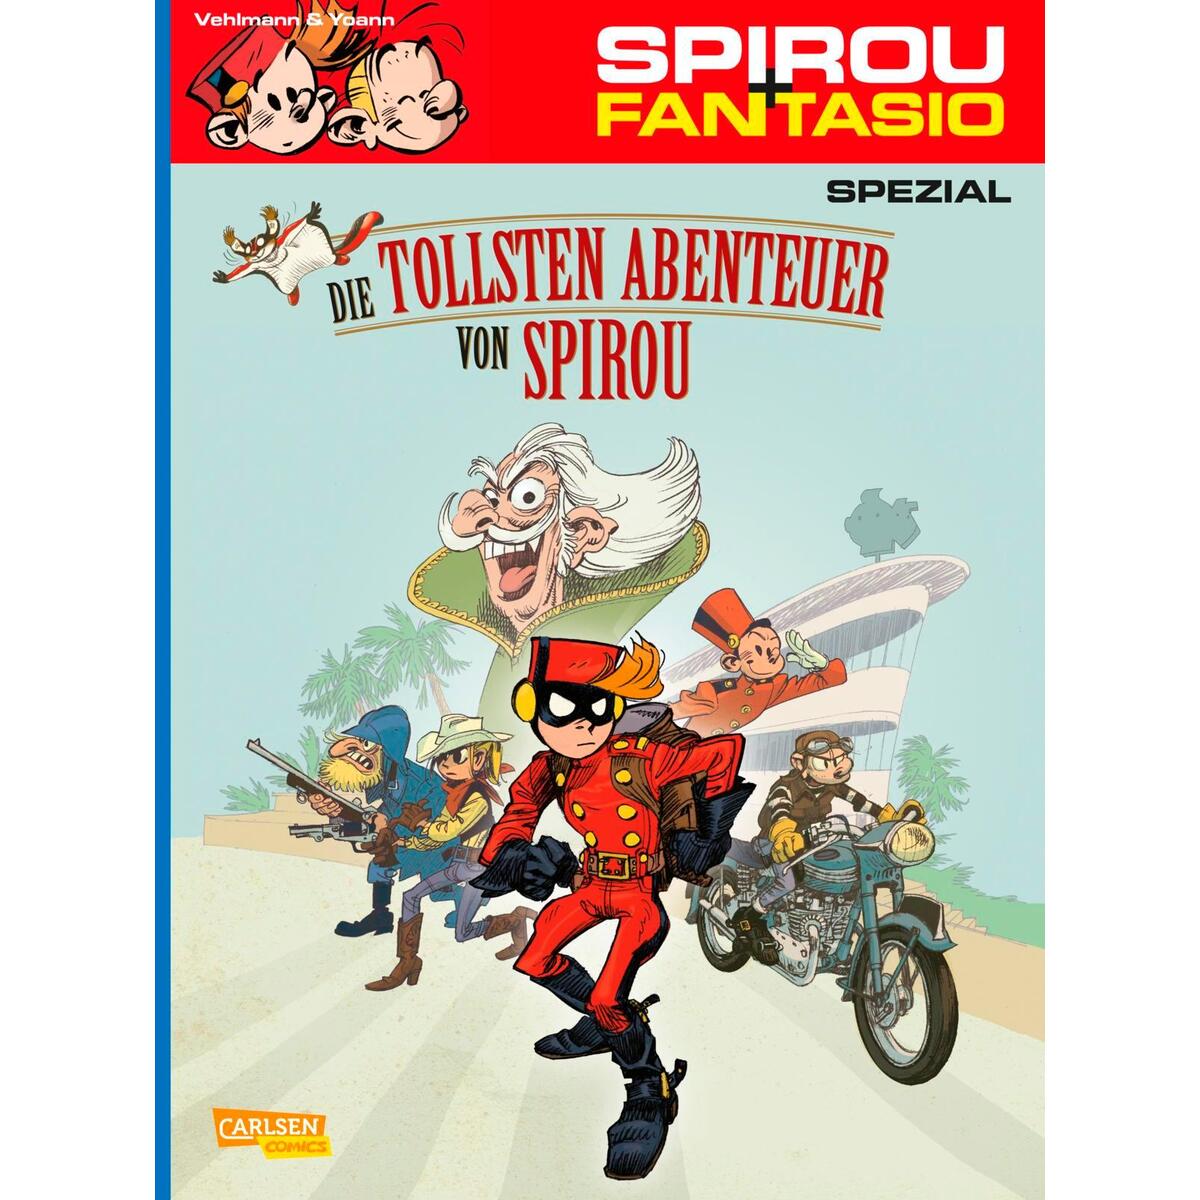 Spirou und Fantasio Spezial 24: Short Stories von Carlsen Verlag GmbH